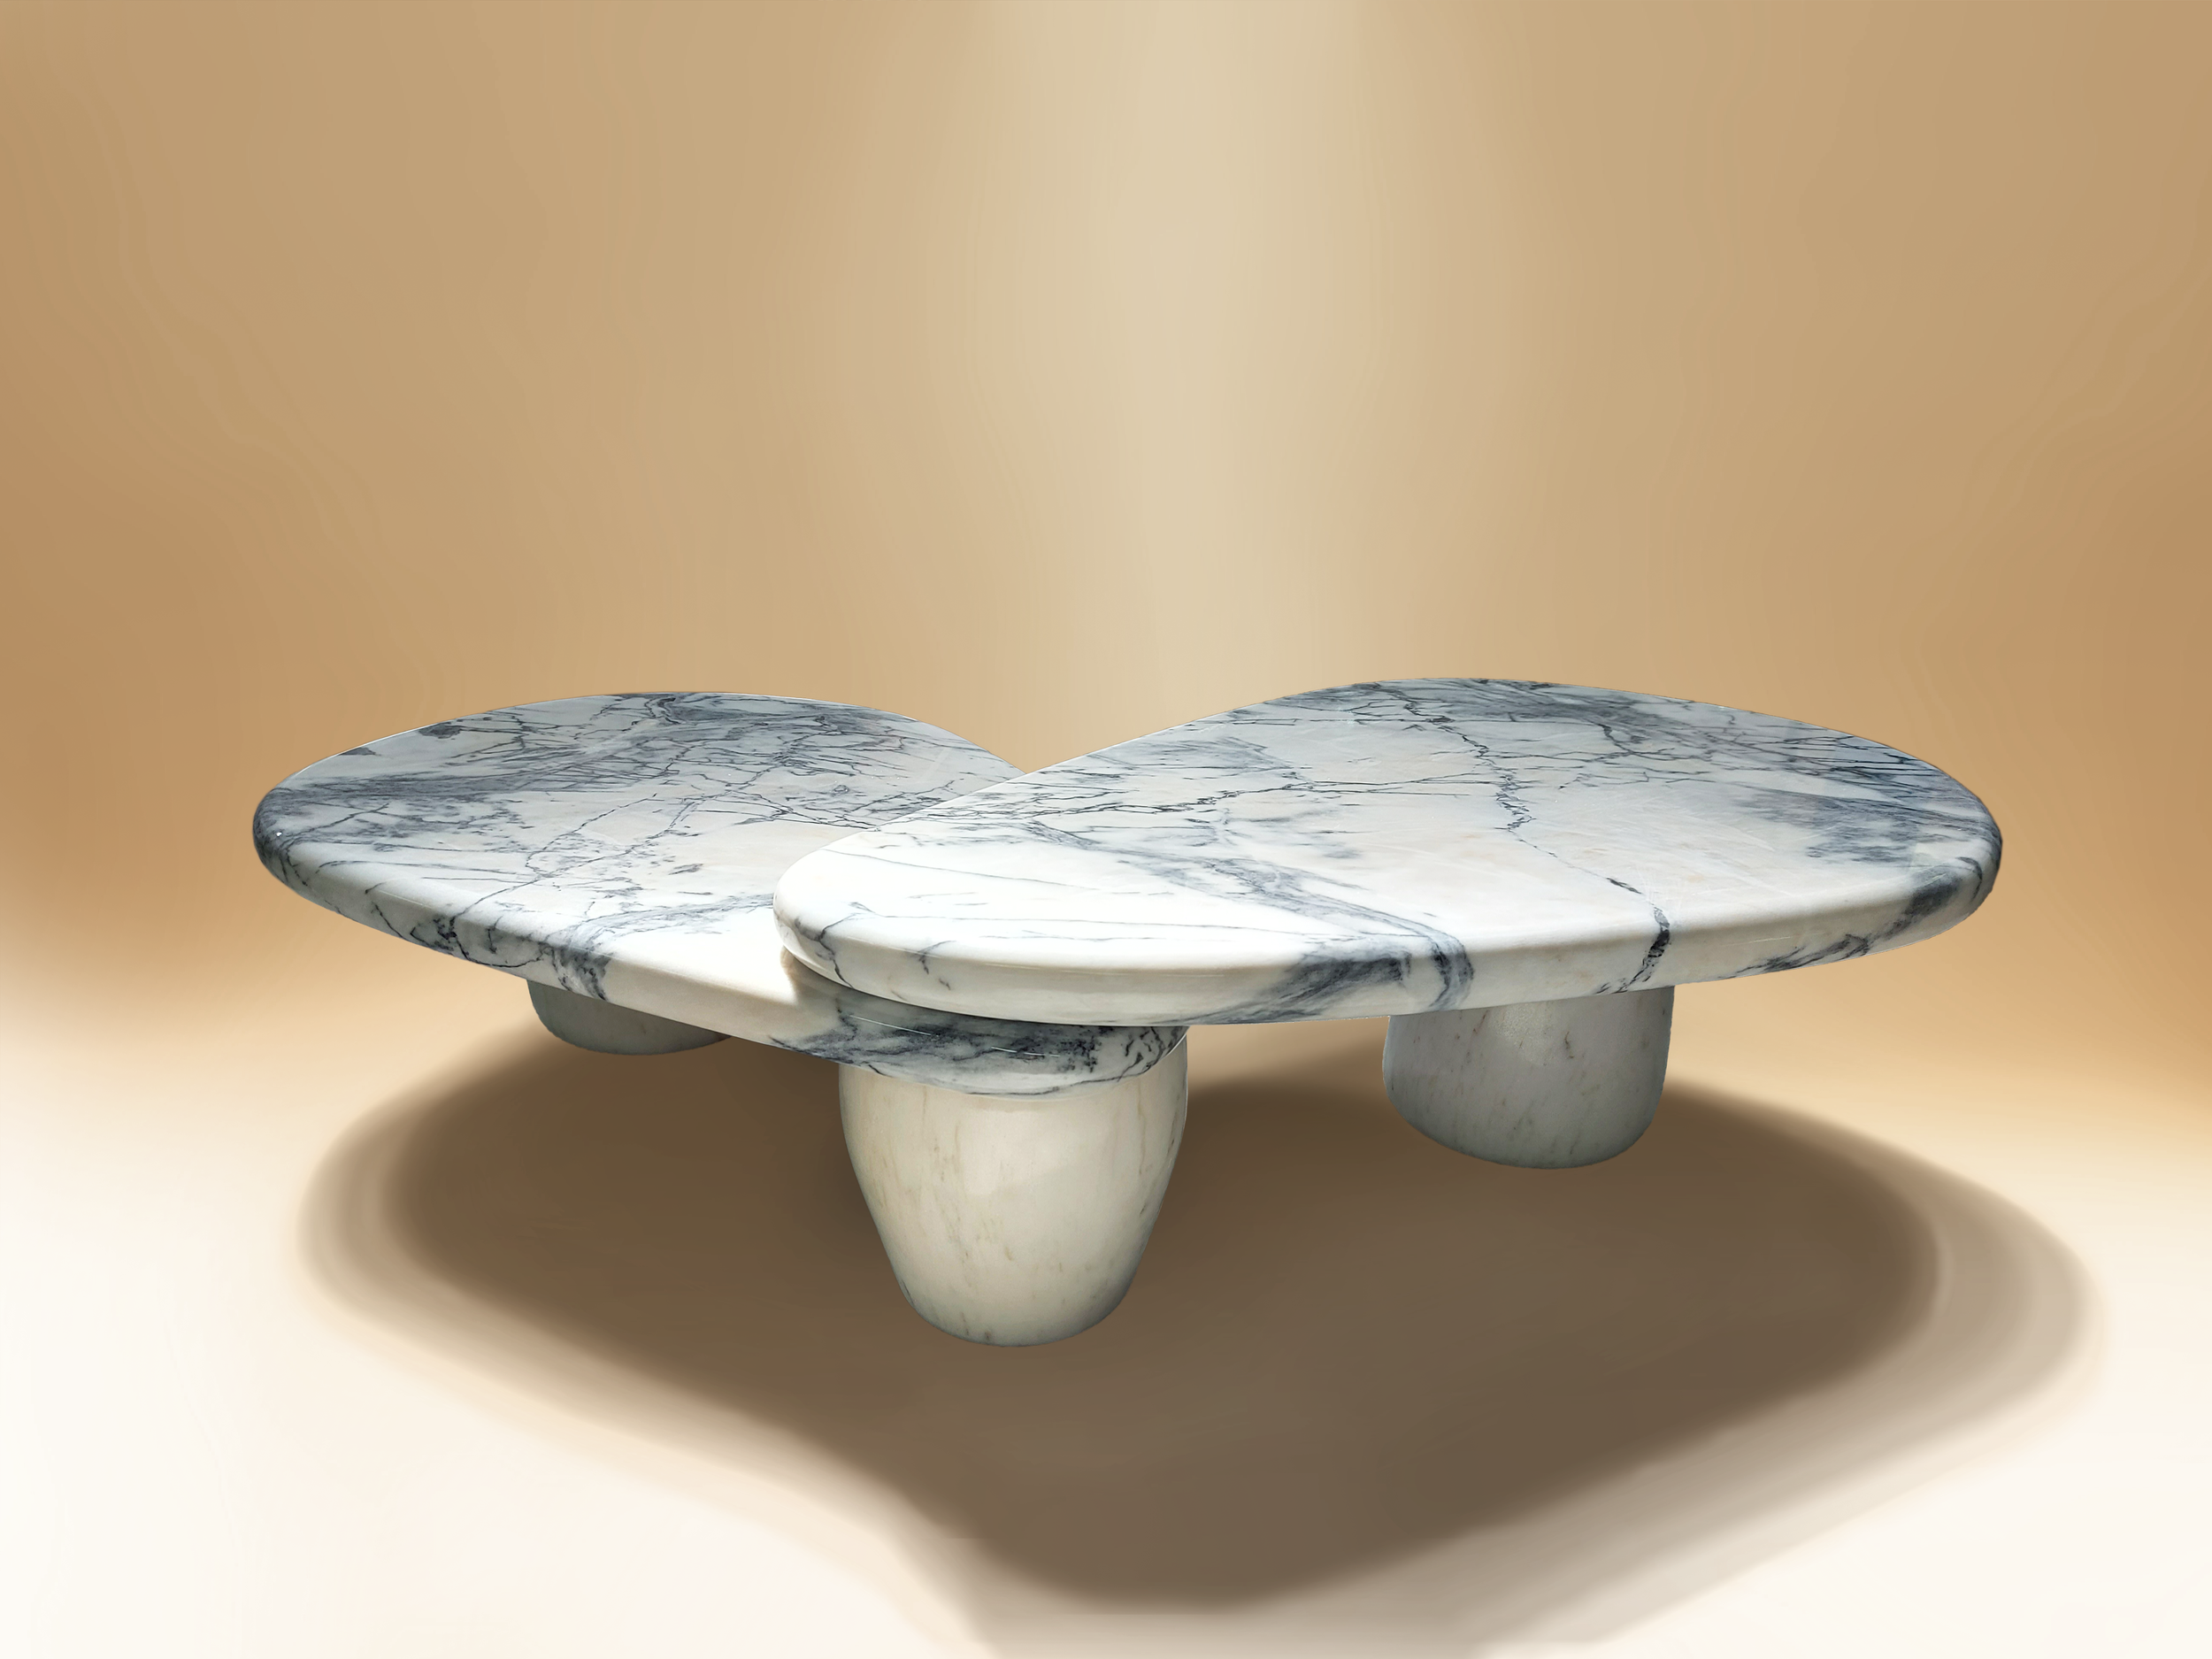 Caracole marble table dovain studio sergio prieto.png